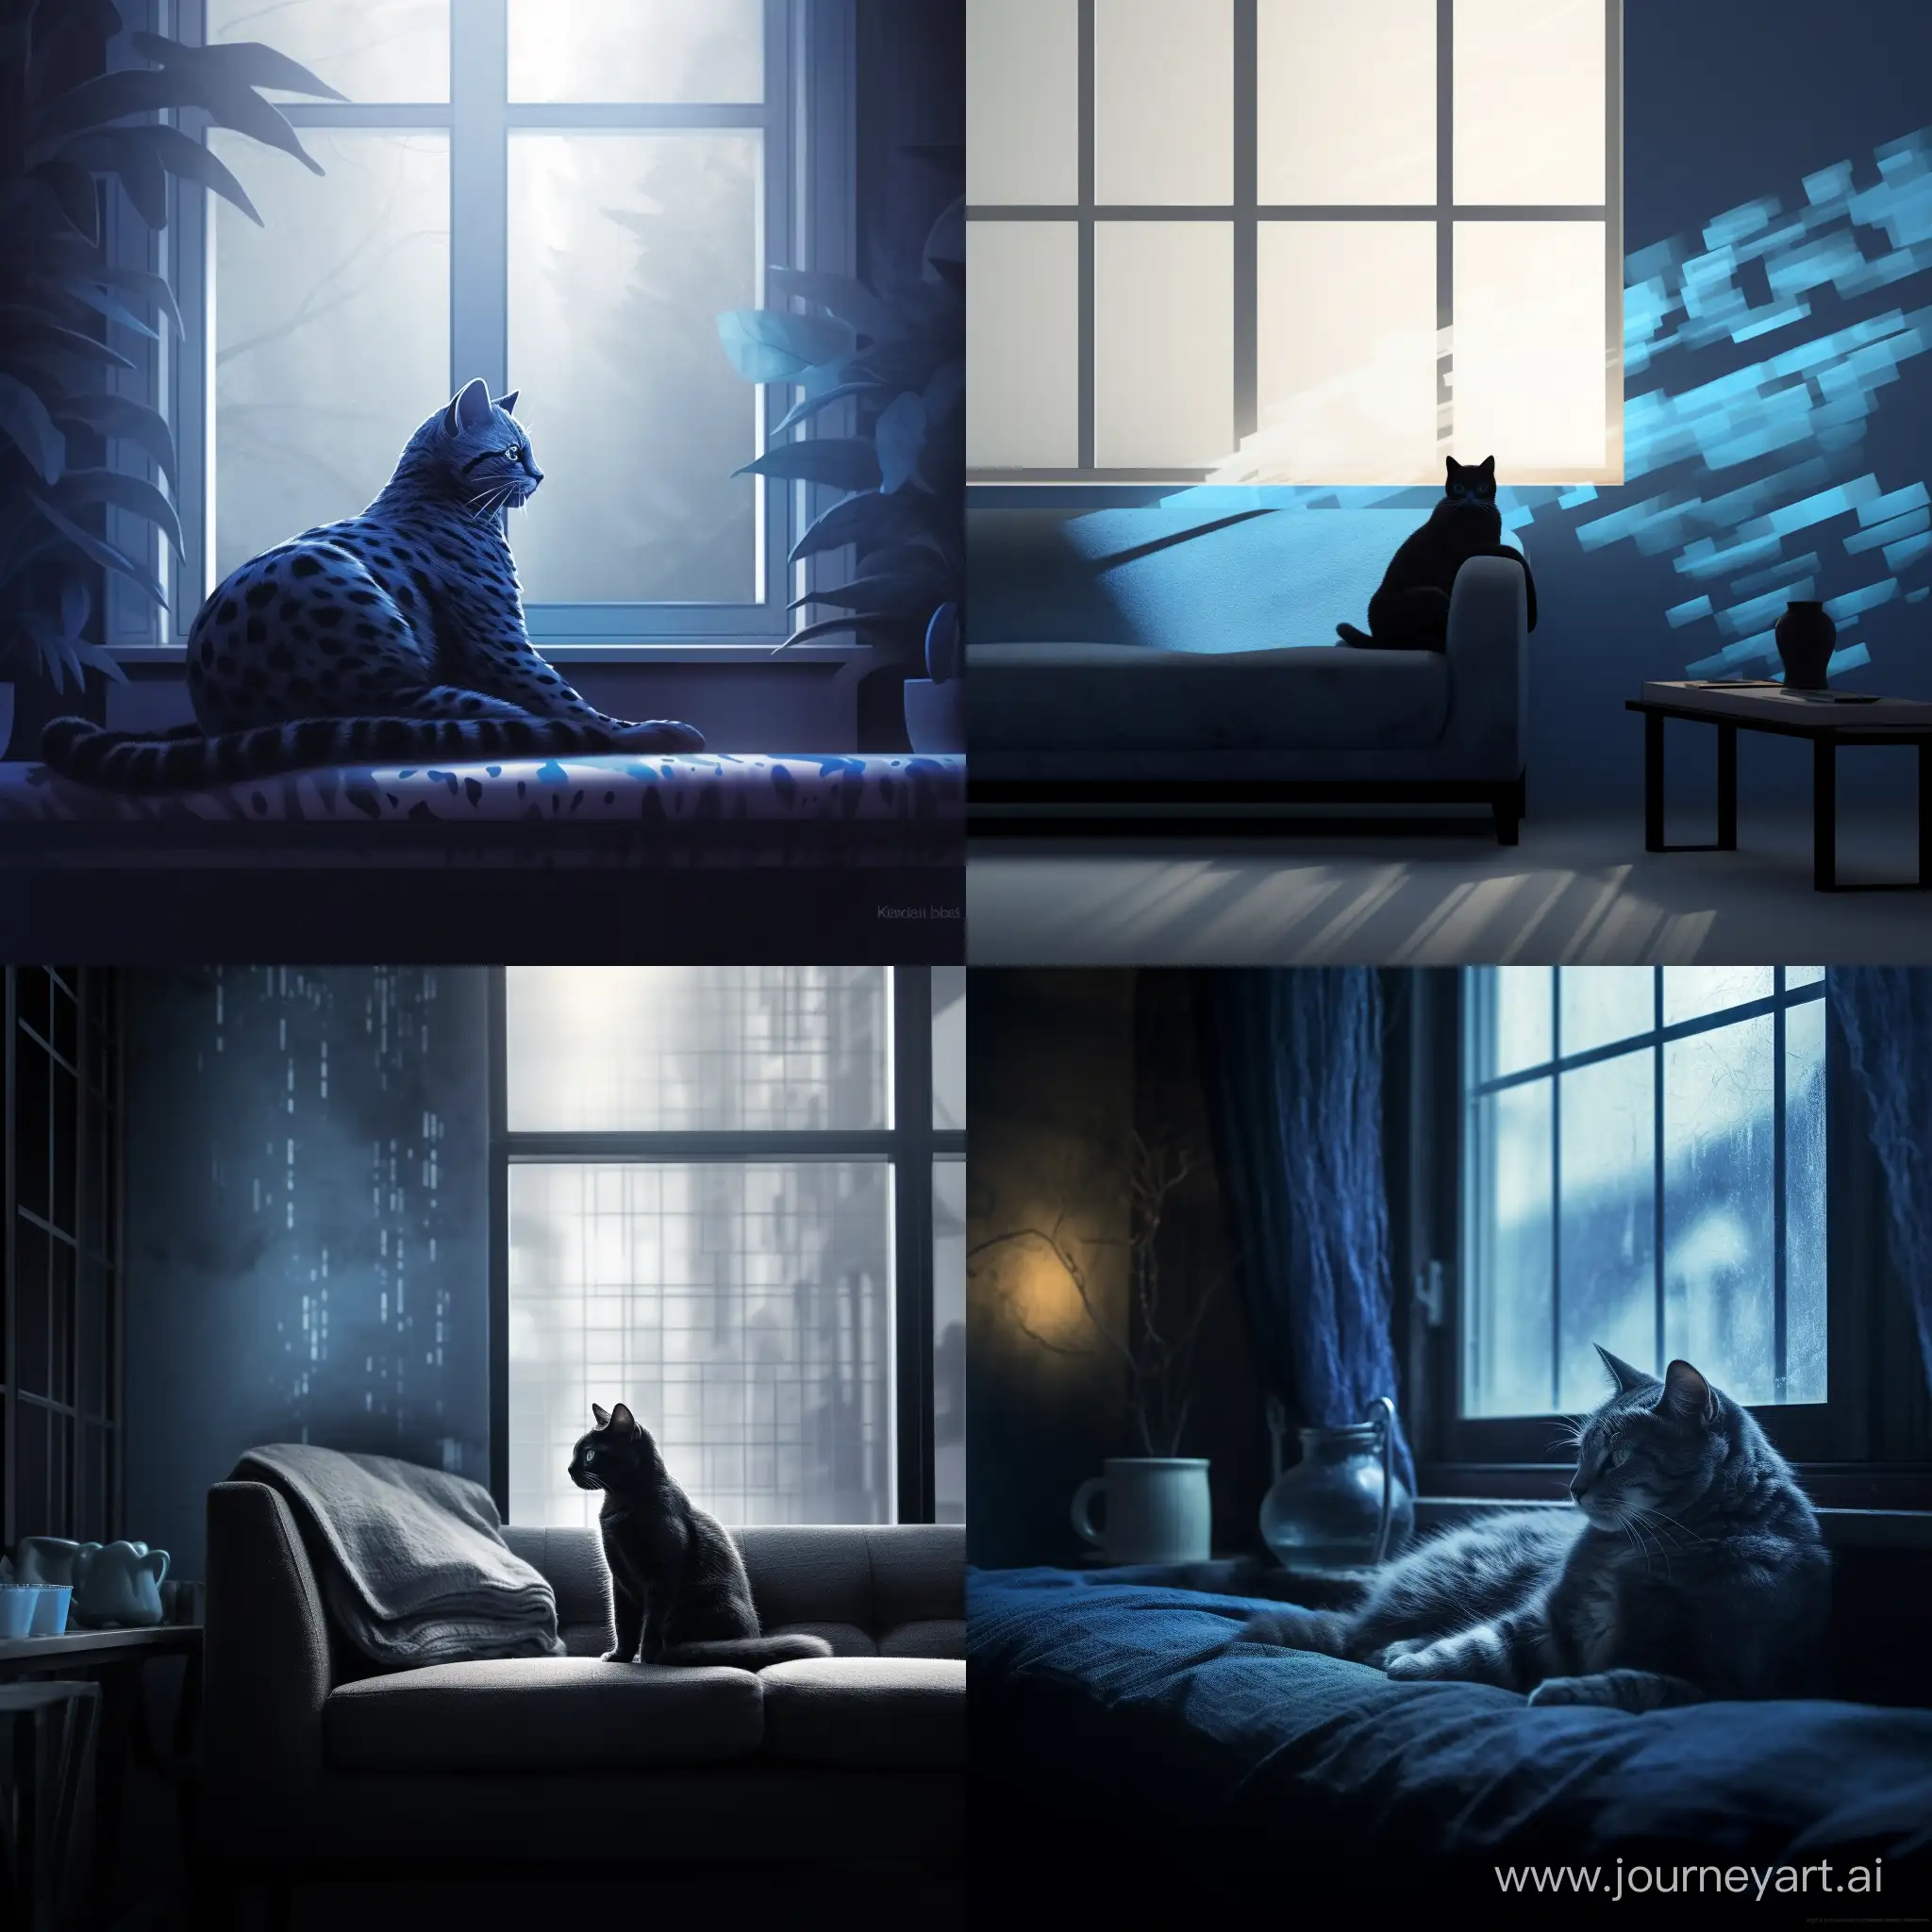 2D минимализм, голубая кошка с черными узорами лениво разлеглась на фоне окна, мягкий свет проникает через окна отбрасывая блики на кошку